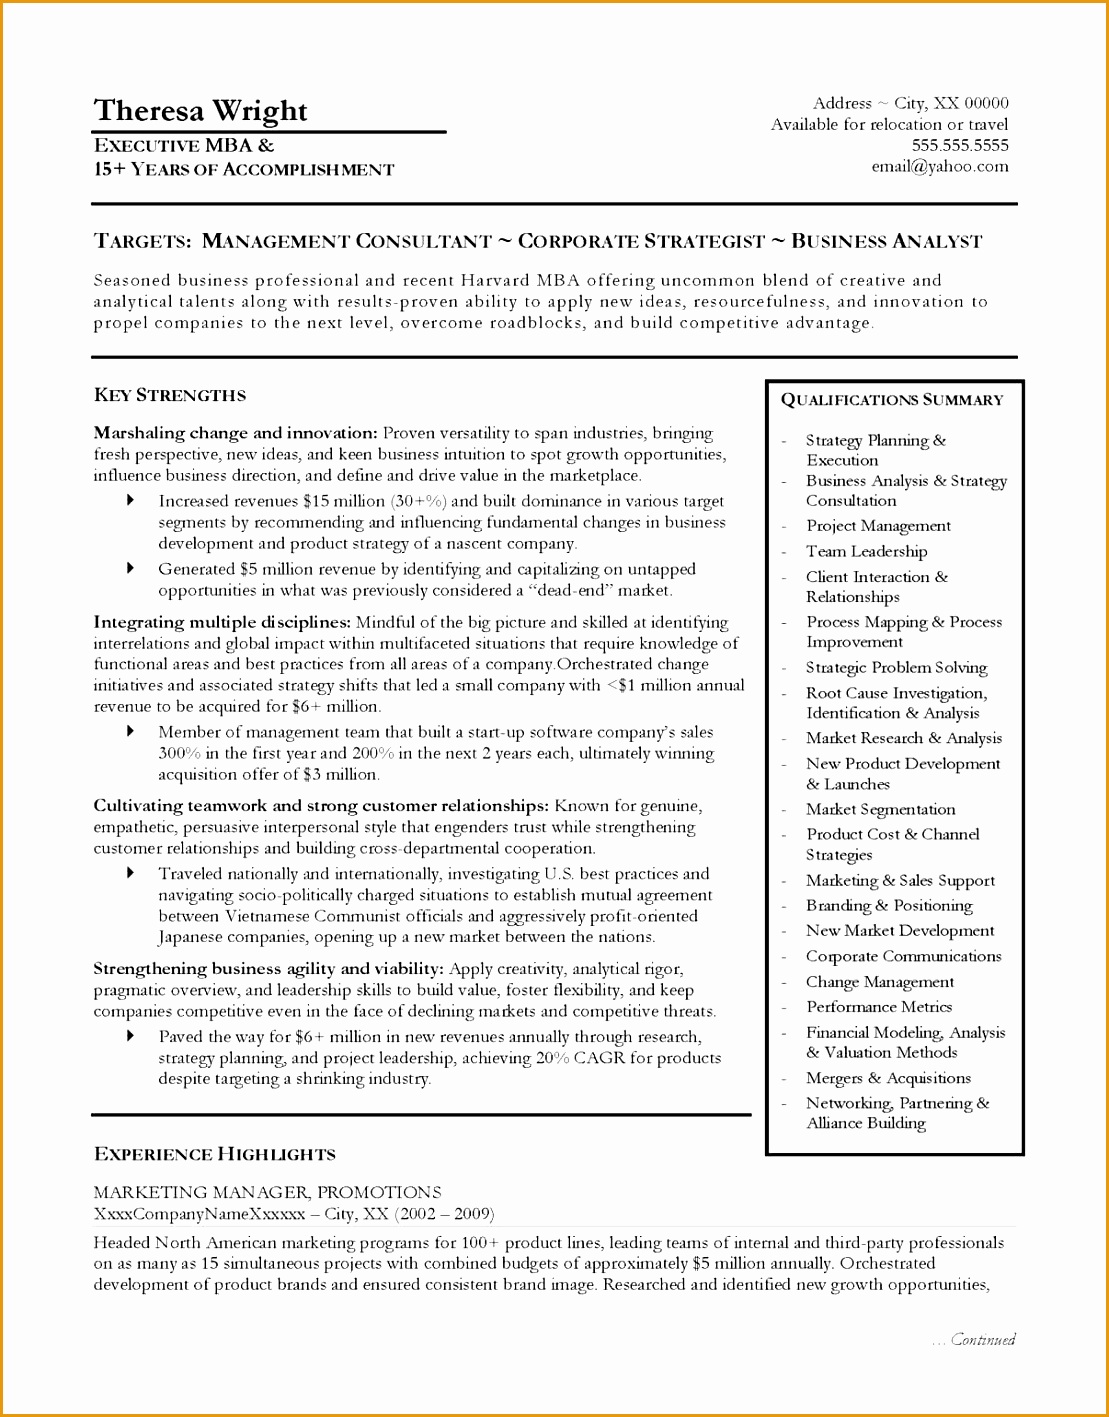 7 recruitment consultant resume sample   curruculum